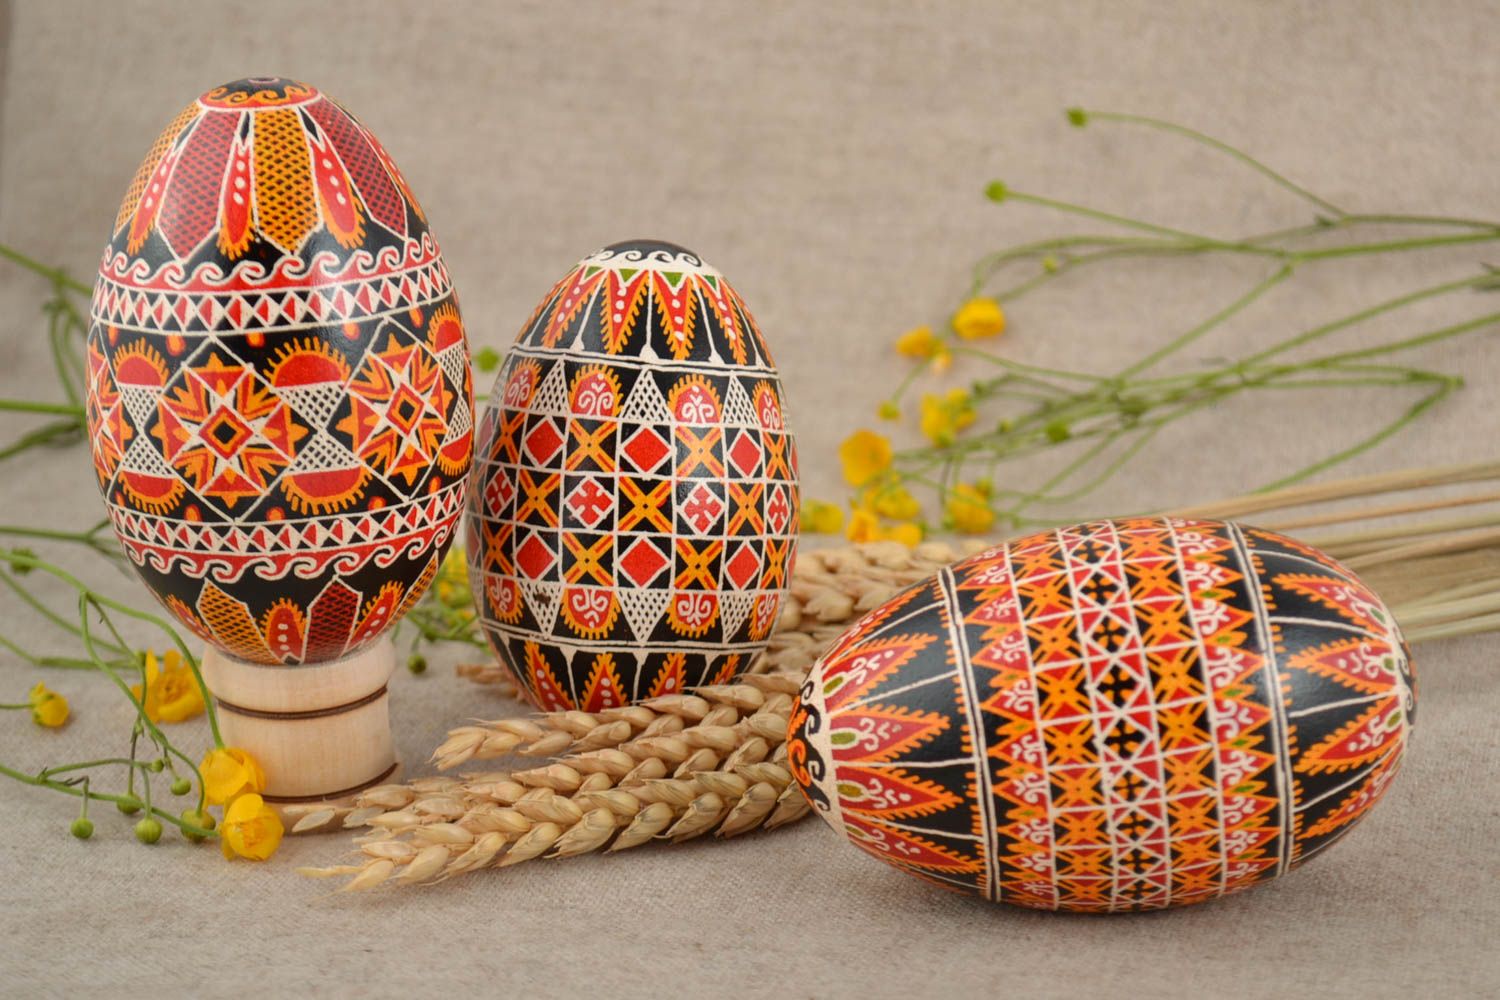 Расписные яйца набор из трех изделий красивые необычные подарок ручной работы фото 1